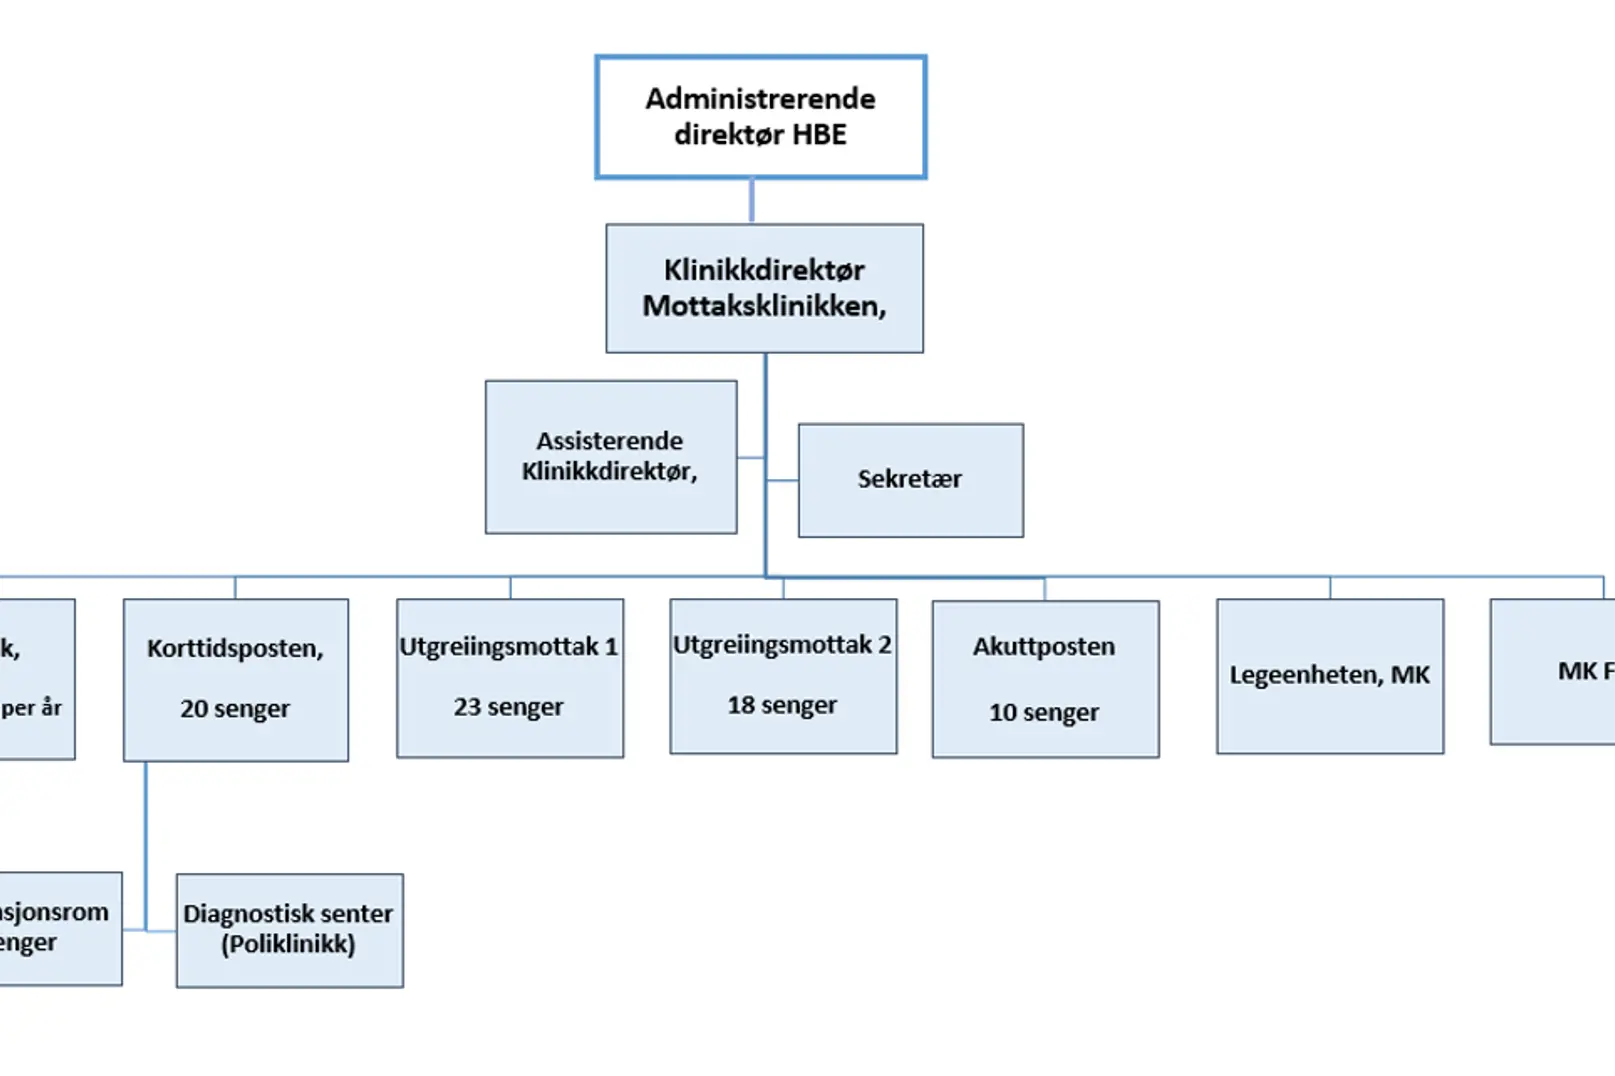 Organisasjonskart for mottaksklinikken, modell som viser ledelse og organisasjonsstruktur og antall senger. Illustrasjon